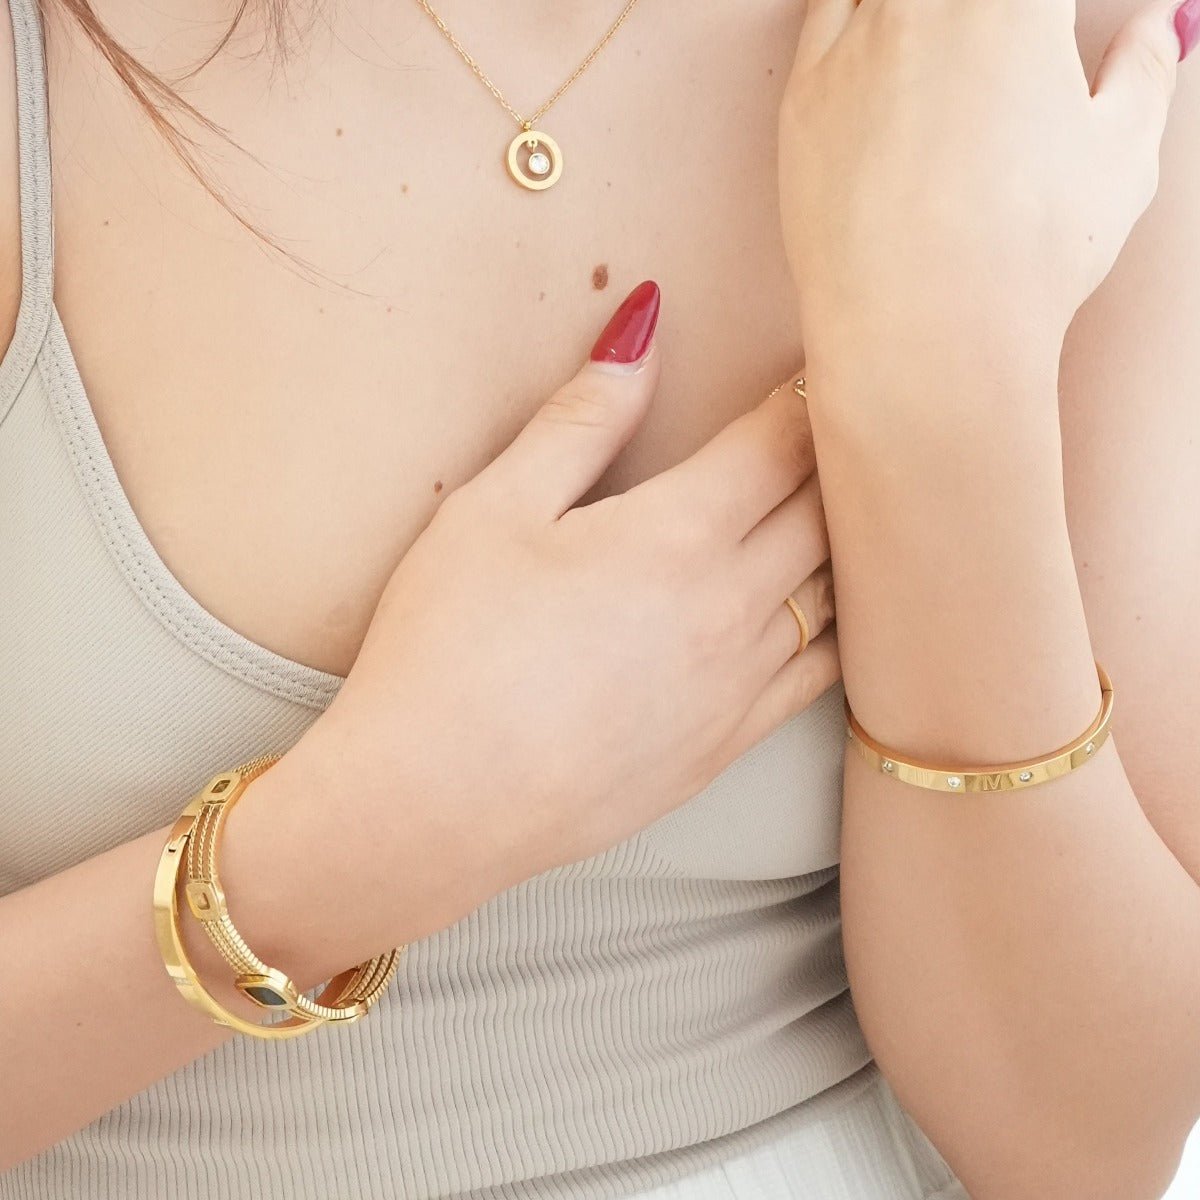 Bracelete Ônix Summer Banhado em Ouro 18k - Murano Joias